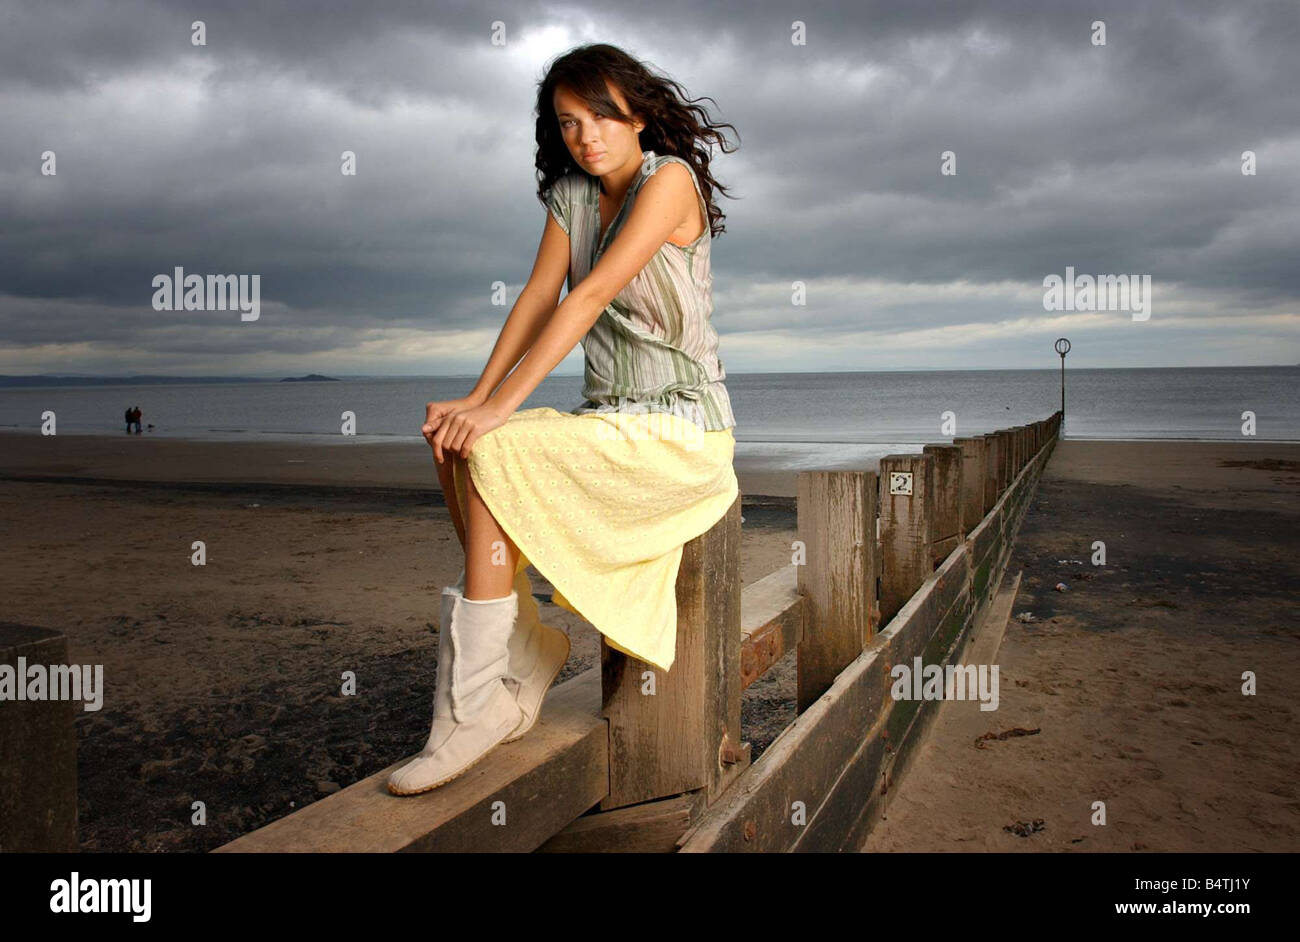 Daily Record di moda spiaggia Portebello Edinburgh Maggio 2004 modello Amy indossando il limone broderie anglaise gonna giubbotto di corallo Foto Stock